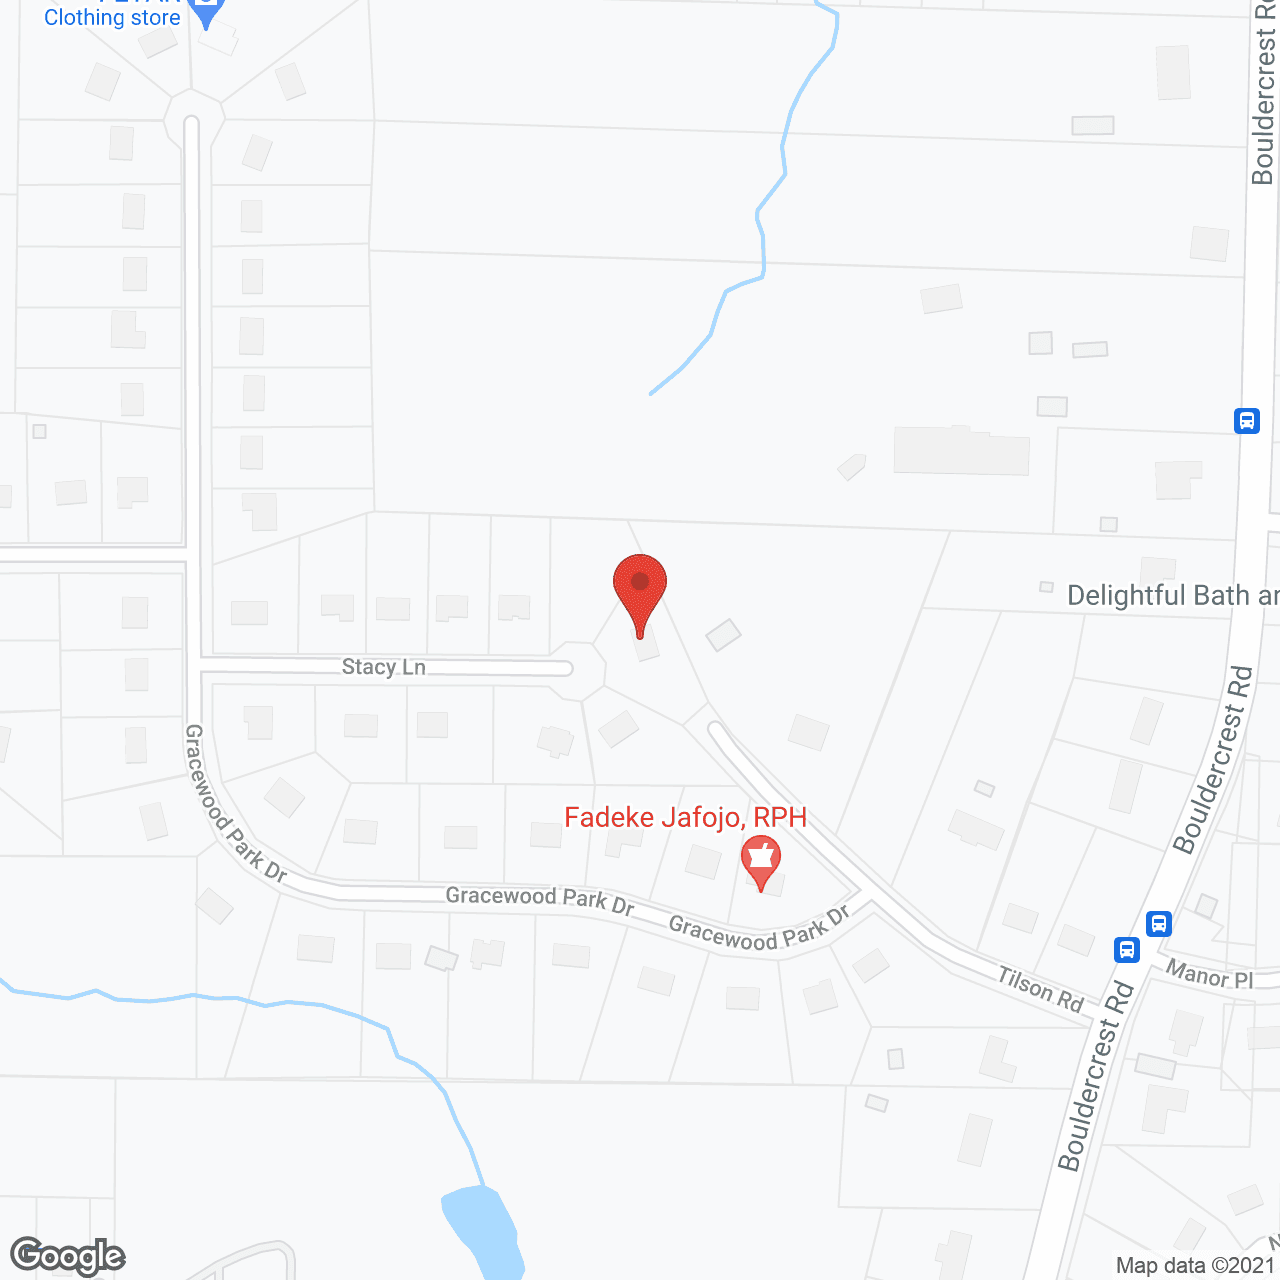 Salem PCH in google map